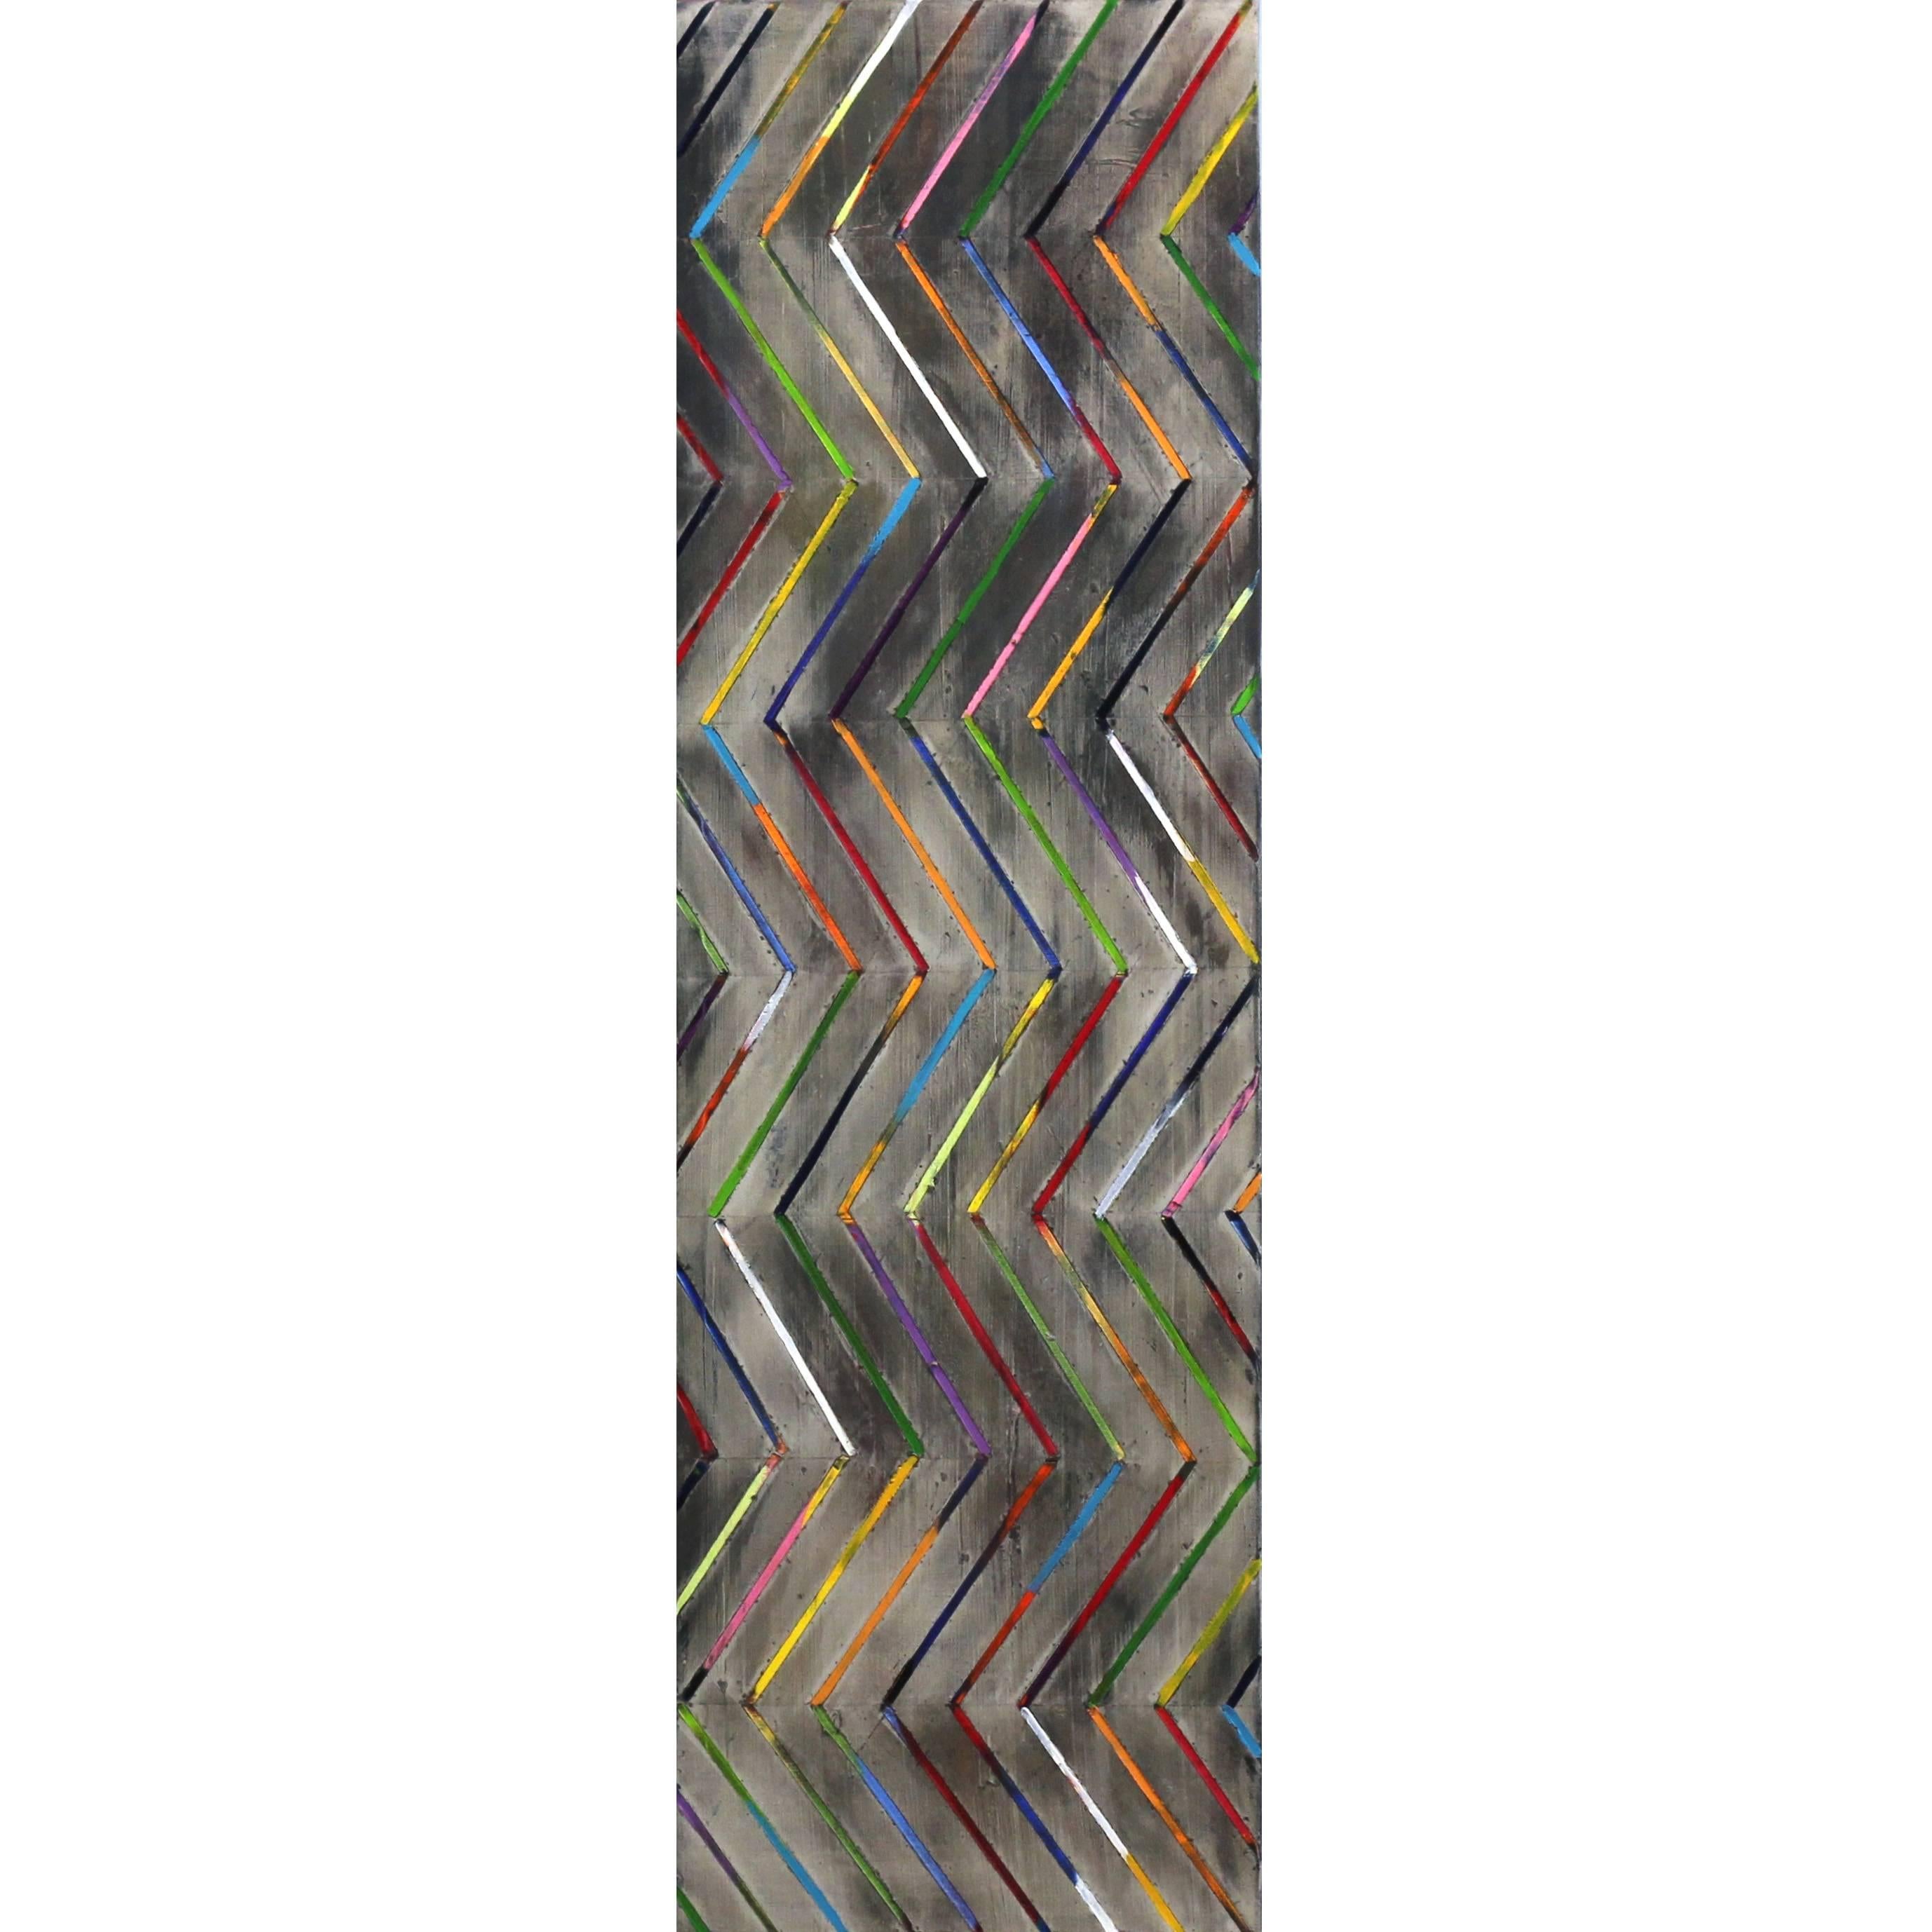 Zig Zag 16-3-2 - Original farbenfrohes Ölgemälde mit Streifen mit Textur